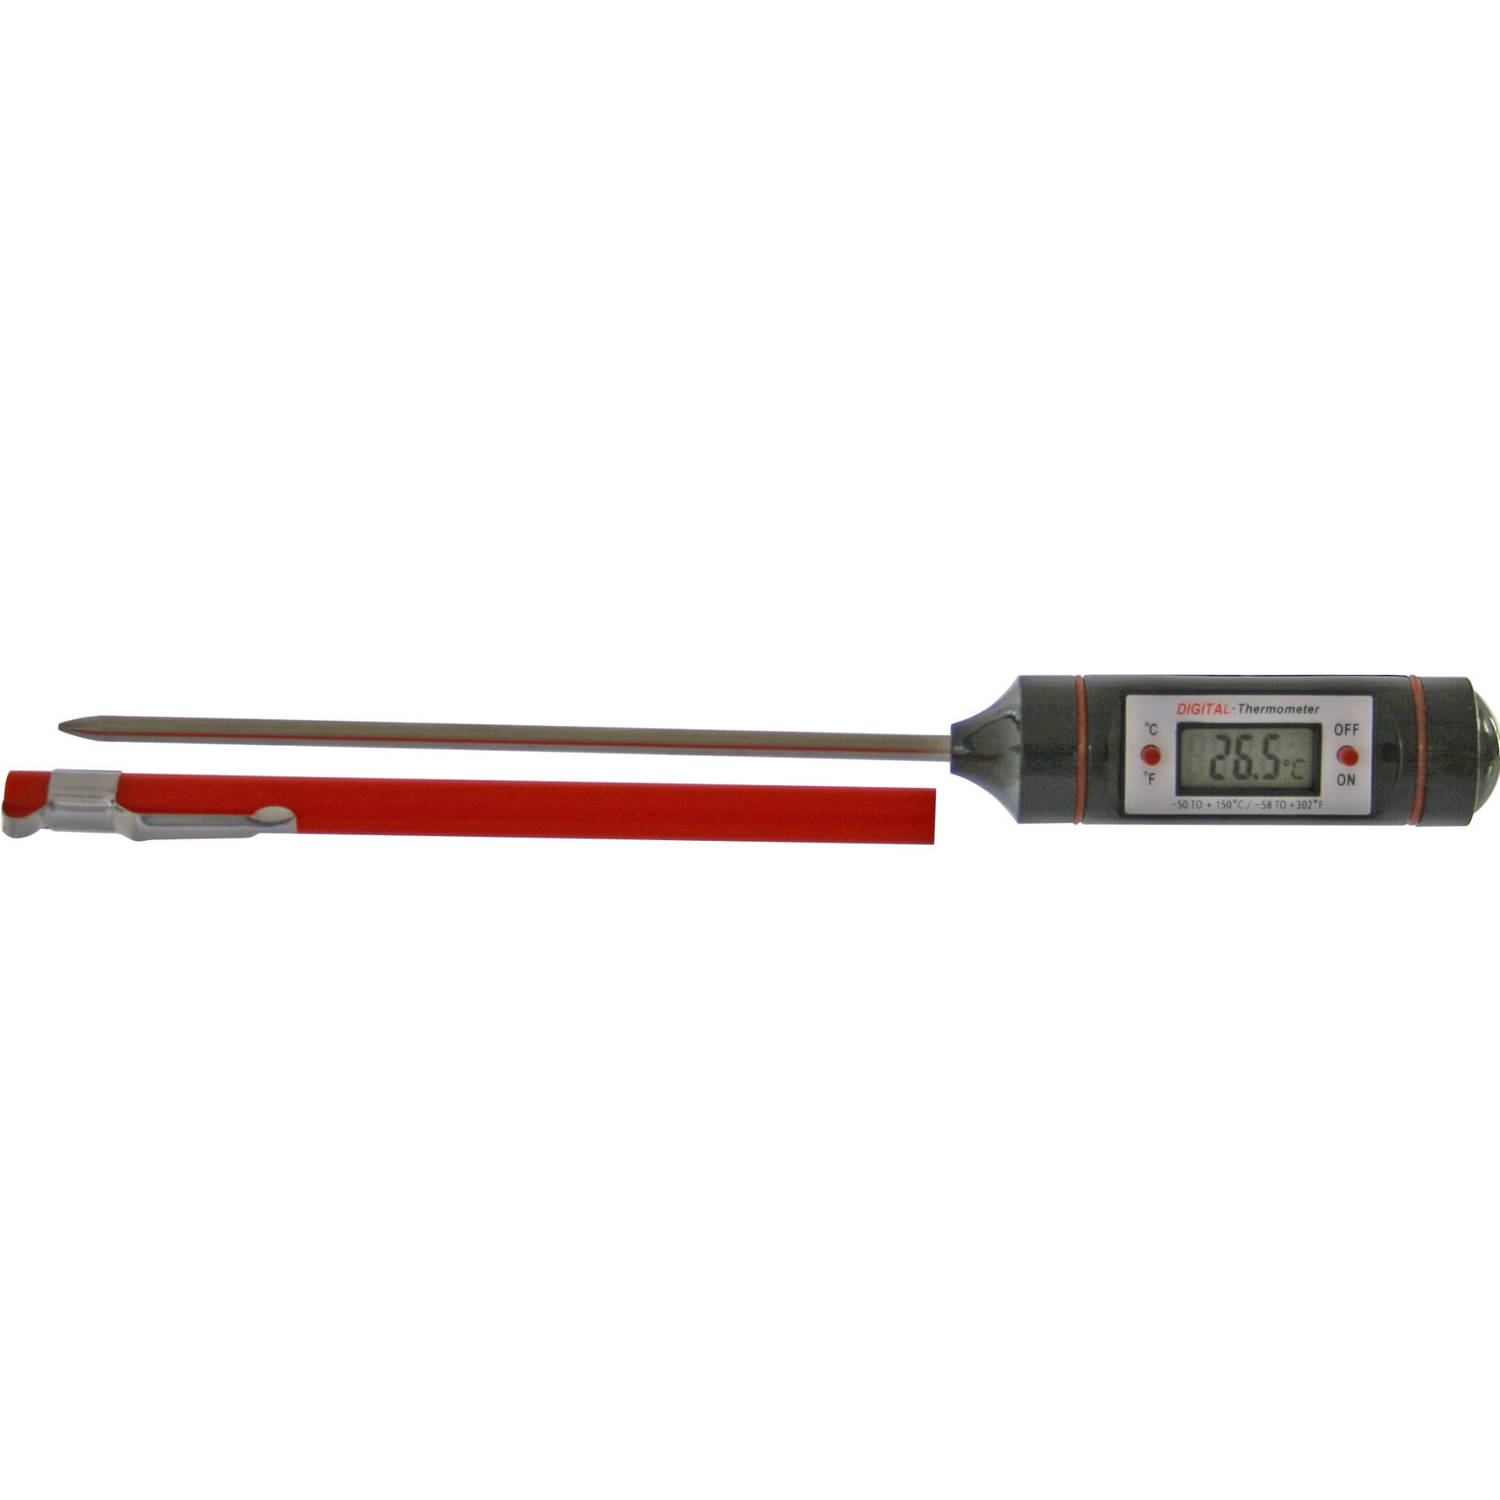 Bedoel Hiel herten Digitale vleesthermometer / keuken thermometer kunststof 20 cm -  Vleesthermometers | Blokker